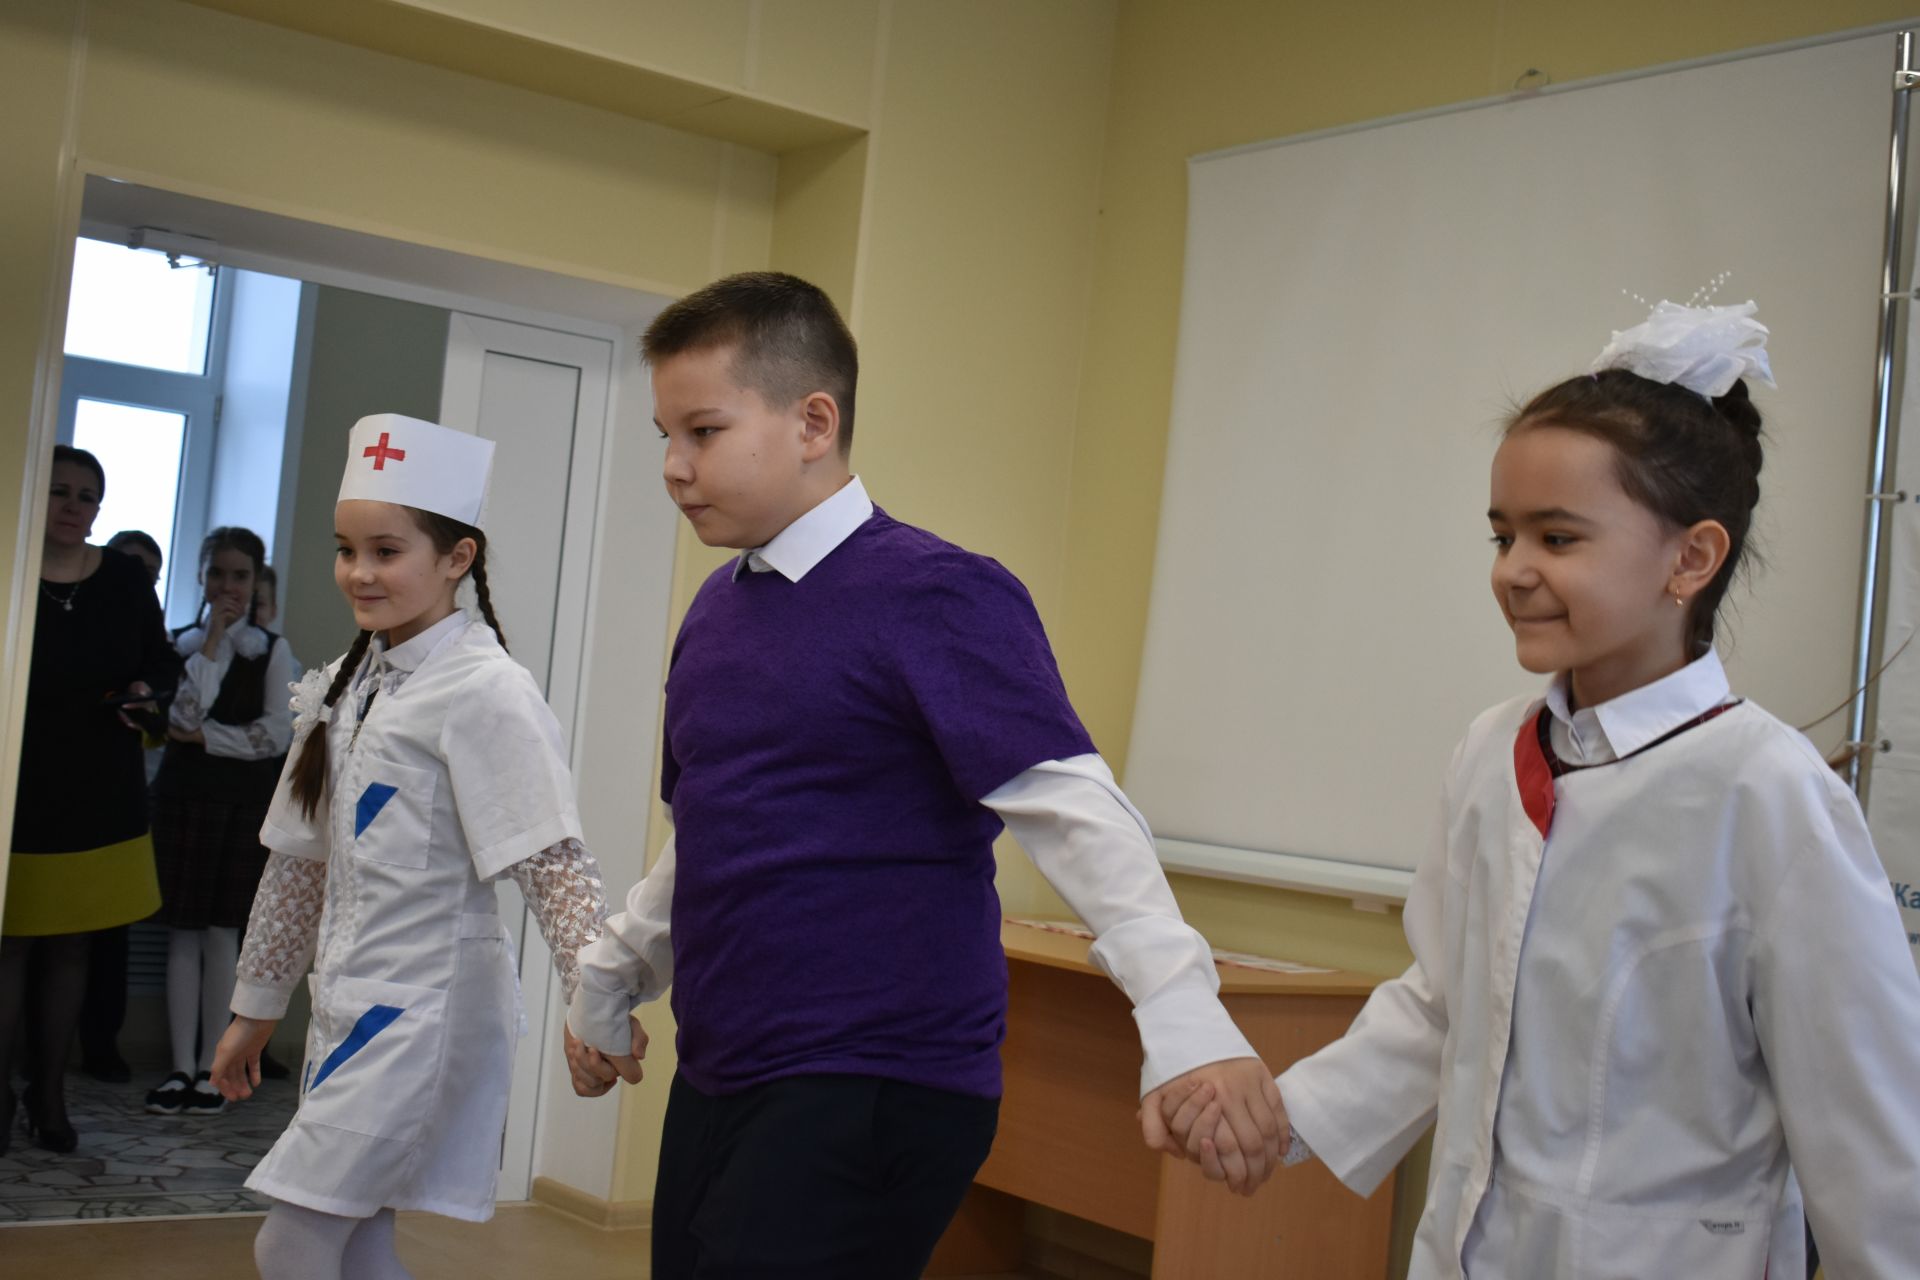 Для школьников в Кайбицкой ЦРБ провели День открытых дверей